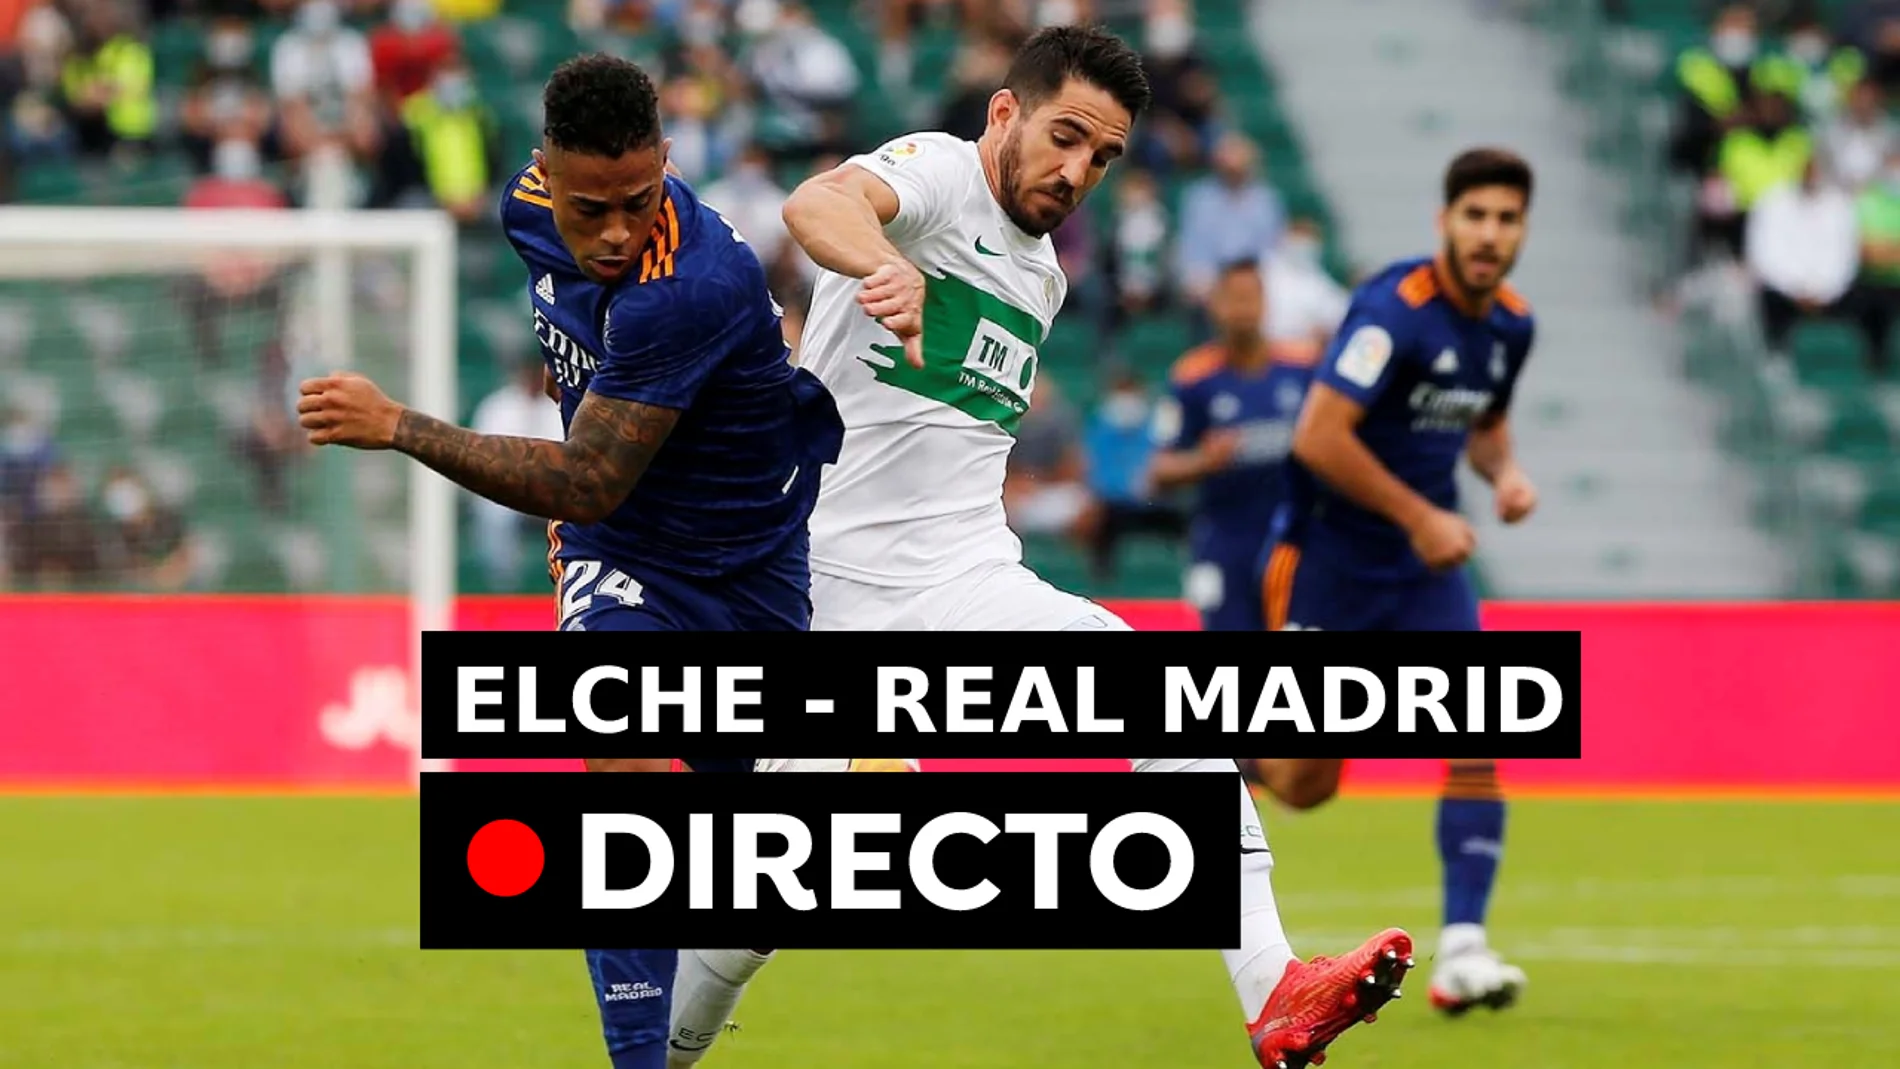 Resultado Elche - Real Madrid en directo | La Liga Santander hoy